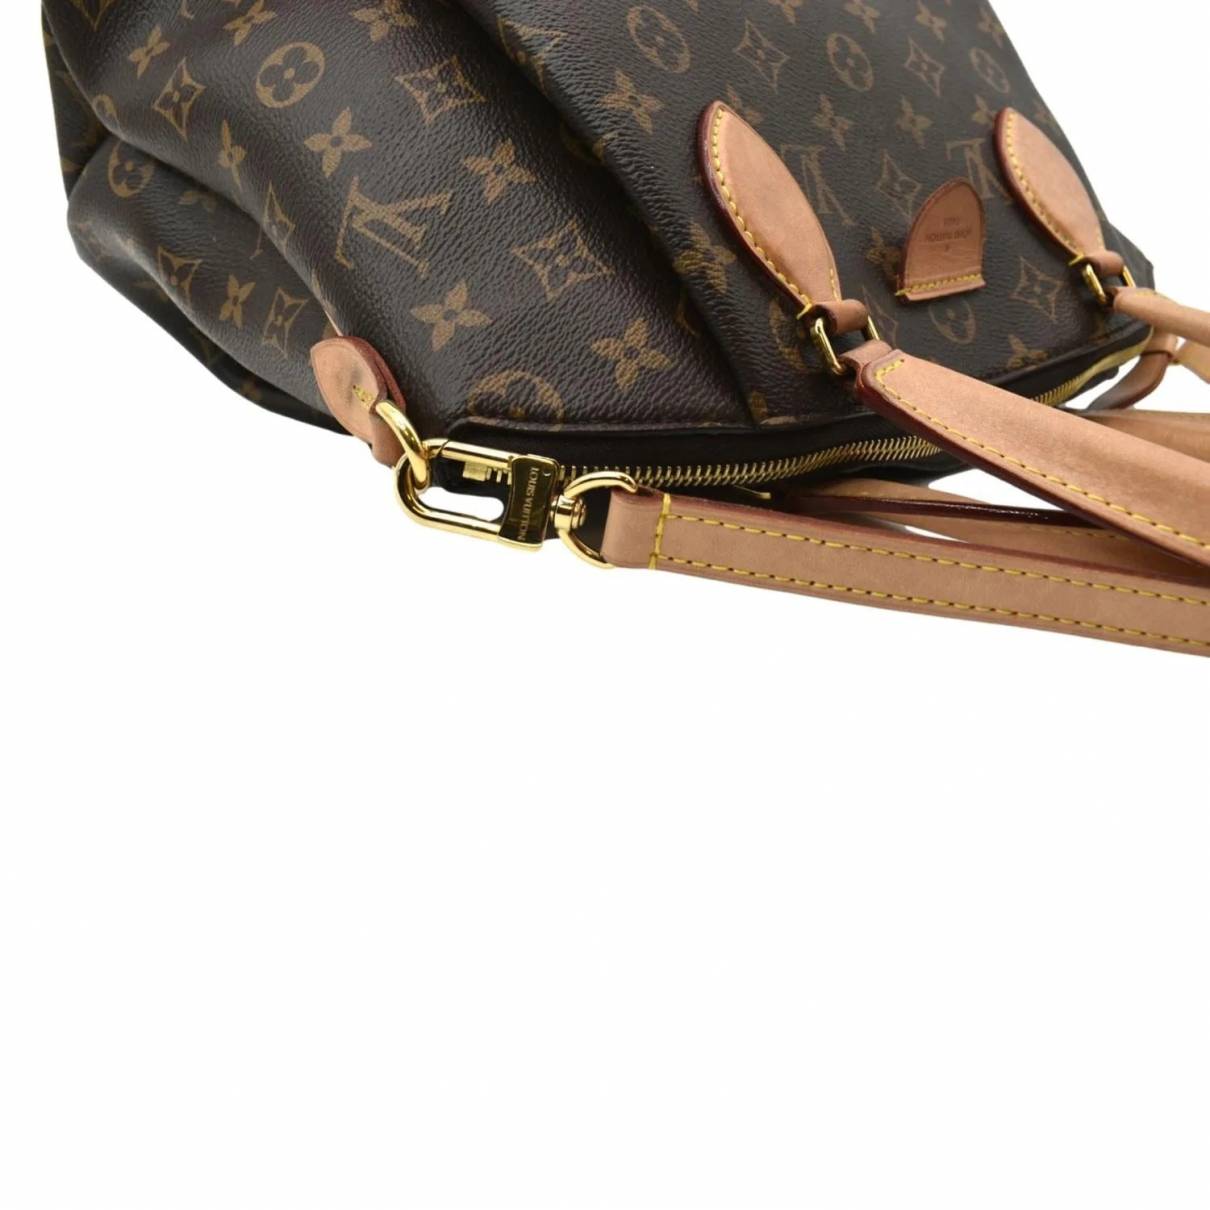 Rivoli Louis Vuitton Handbags for Women - Vestiaire Collective